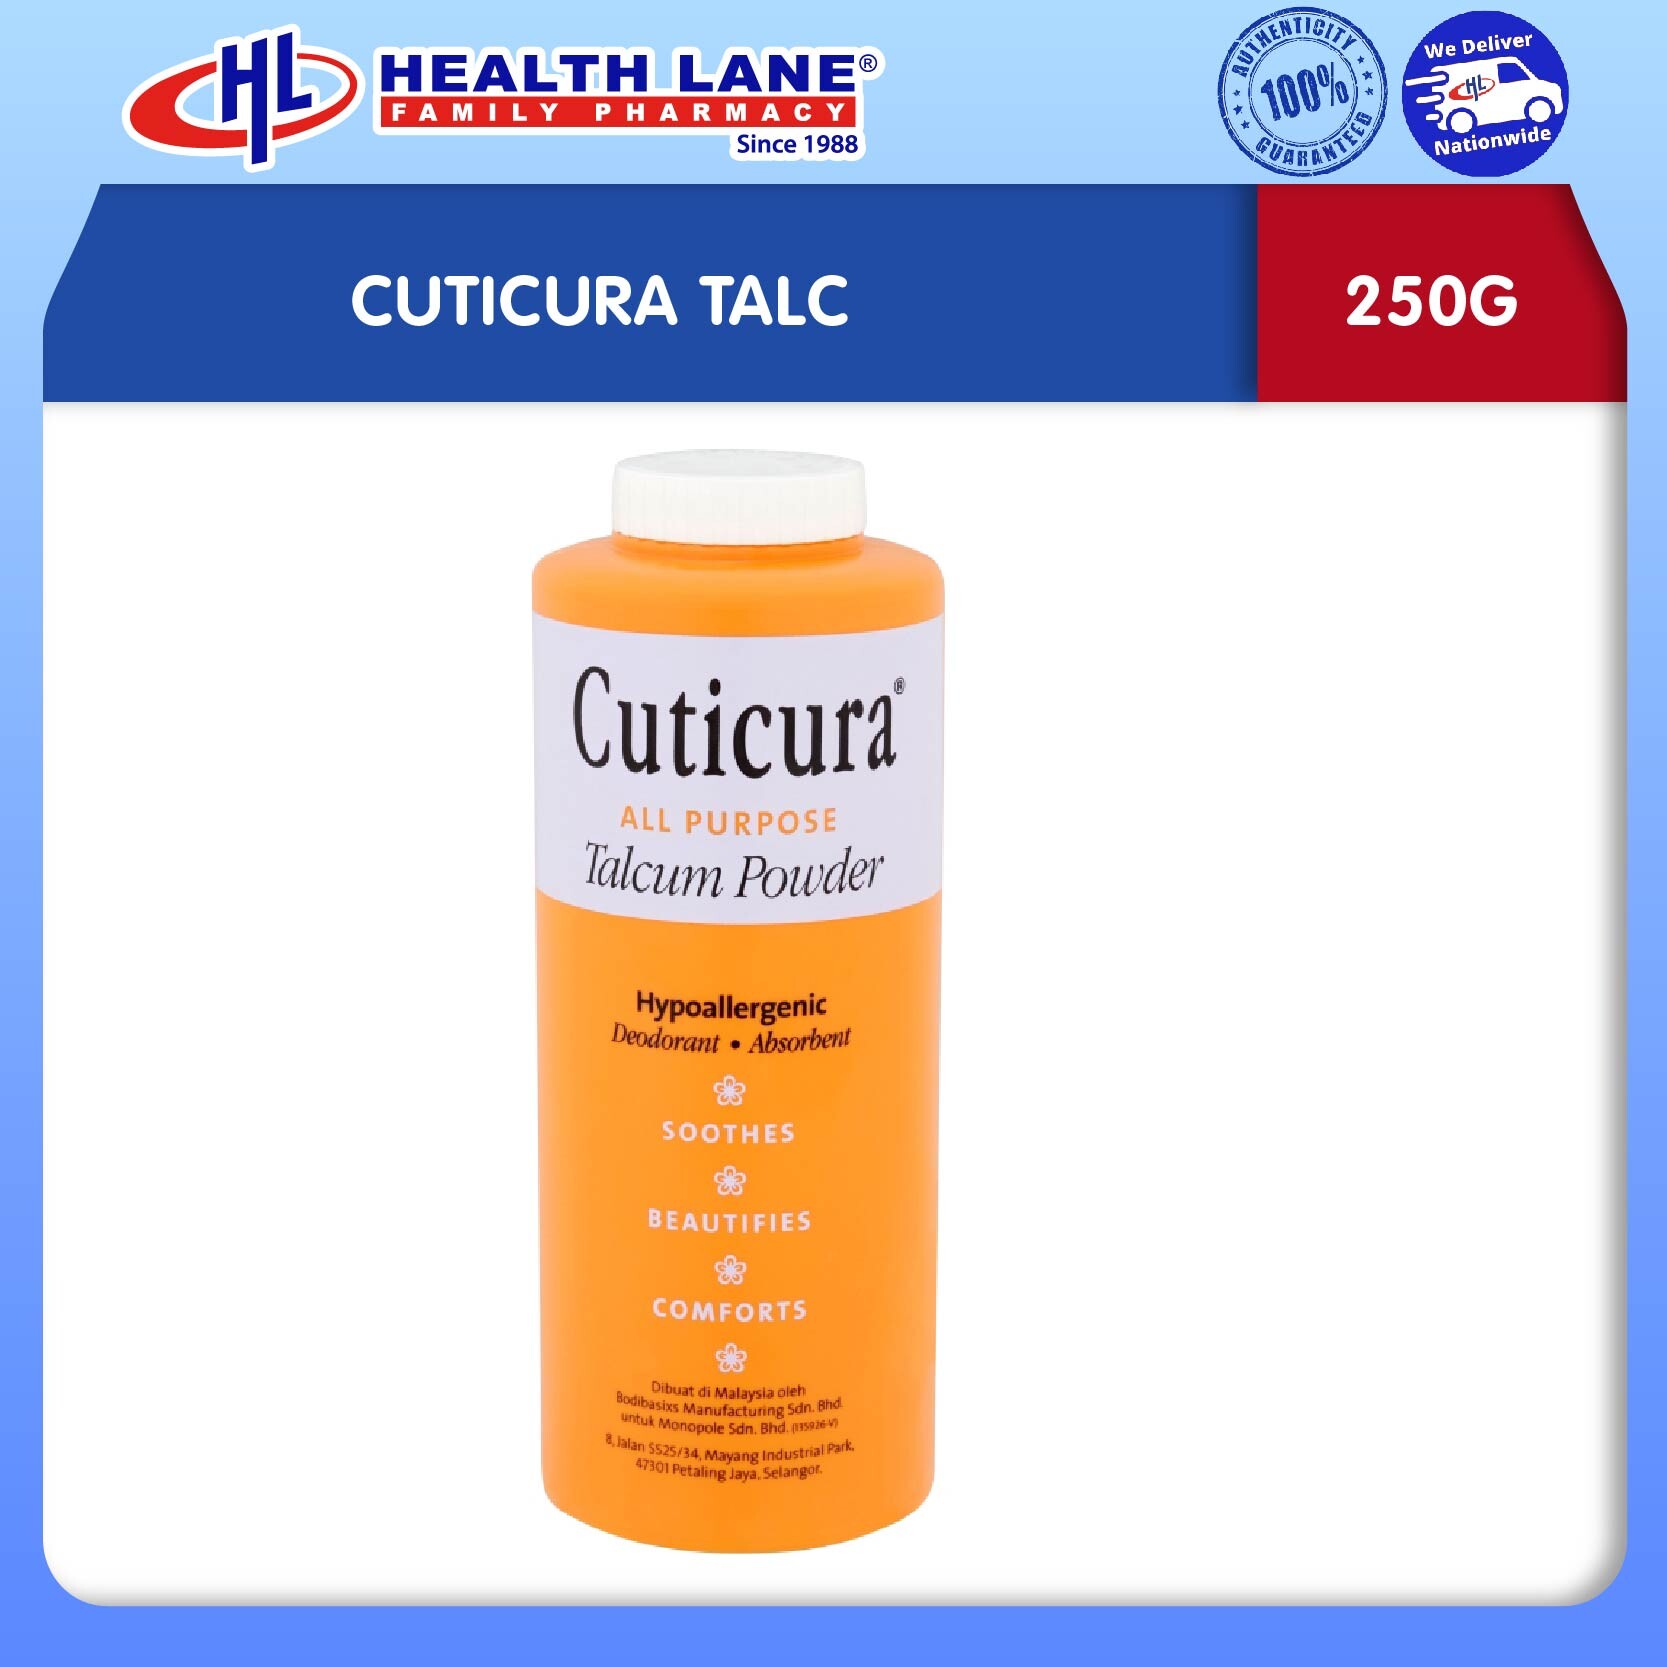 CUTICURA TALC (250G)